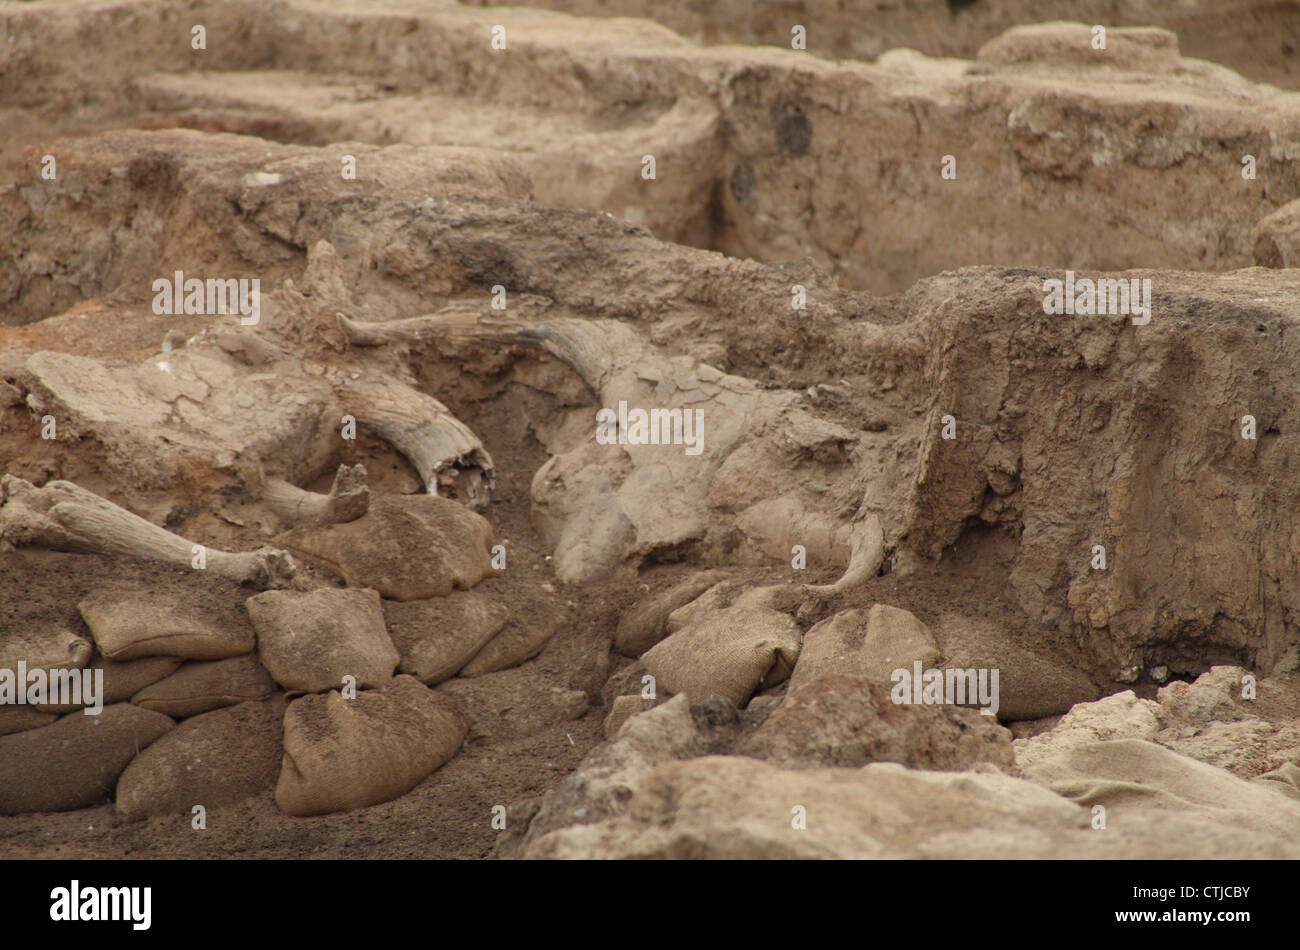 Crâne et cornes d'Aurochs in situ trouvés dans les murs entourant une sépulture dans la ville de monticule du début du Néolithique de Catalhoyuk, près de Konya, Turquie, datant de 9500 ans Banque D'Images